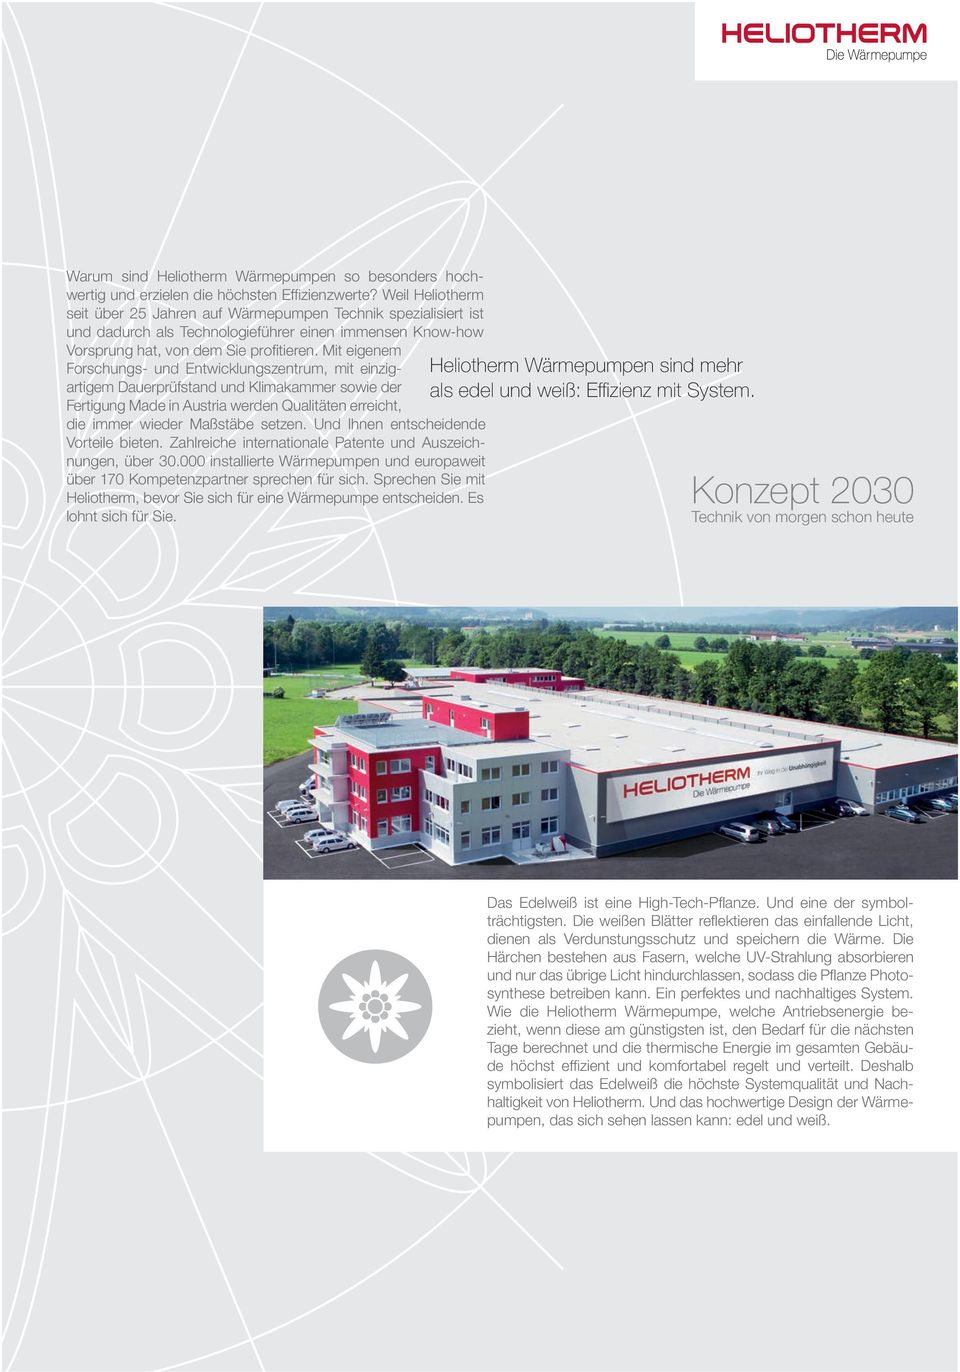 Mit eigenem Forschungs- und Entwicklungszentrum, mit einzigartigem Dauerprüfstand und Klimakammer sowie der Fertigung Made in Austria werden Qualitäten erreicht, die immer wieder Maßstäbe setzen.